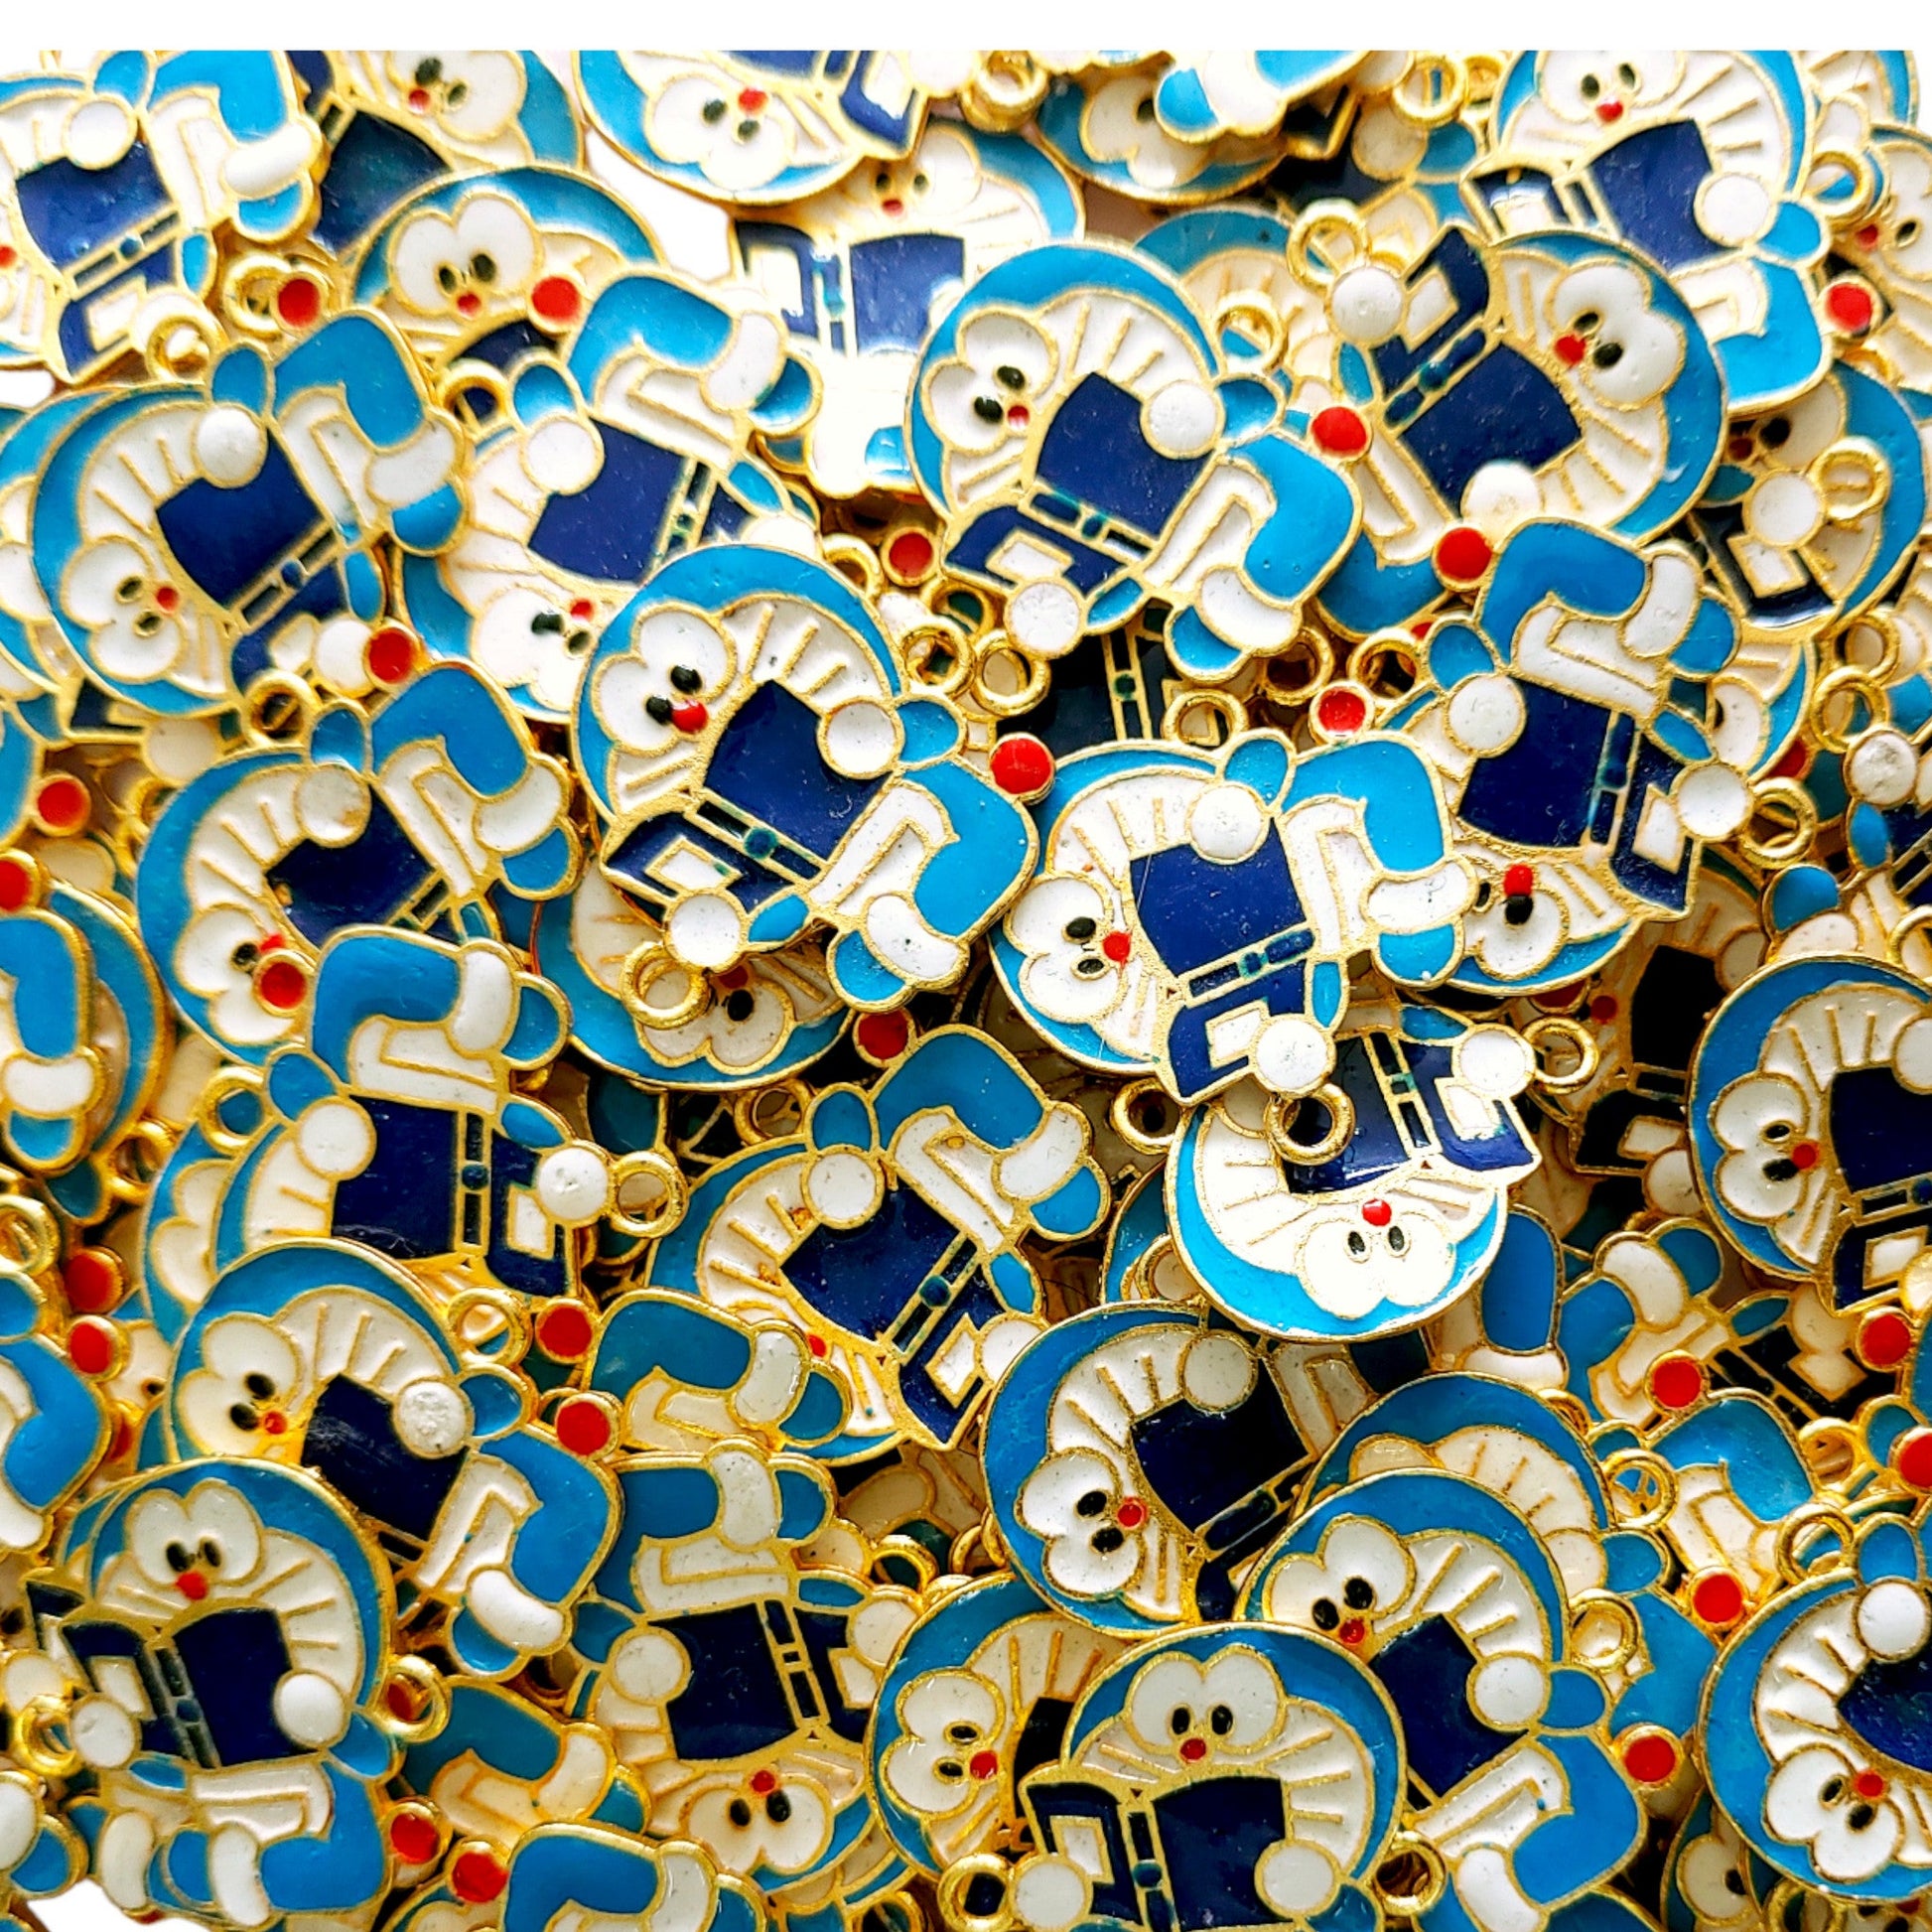 Indian Petals Doraemon Shape Metal Mazak Motif for Rakhi, Jewelry designing and Craft Making or Decor